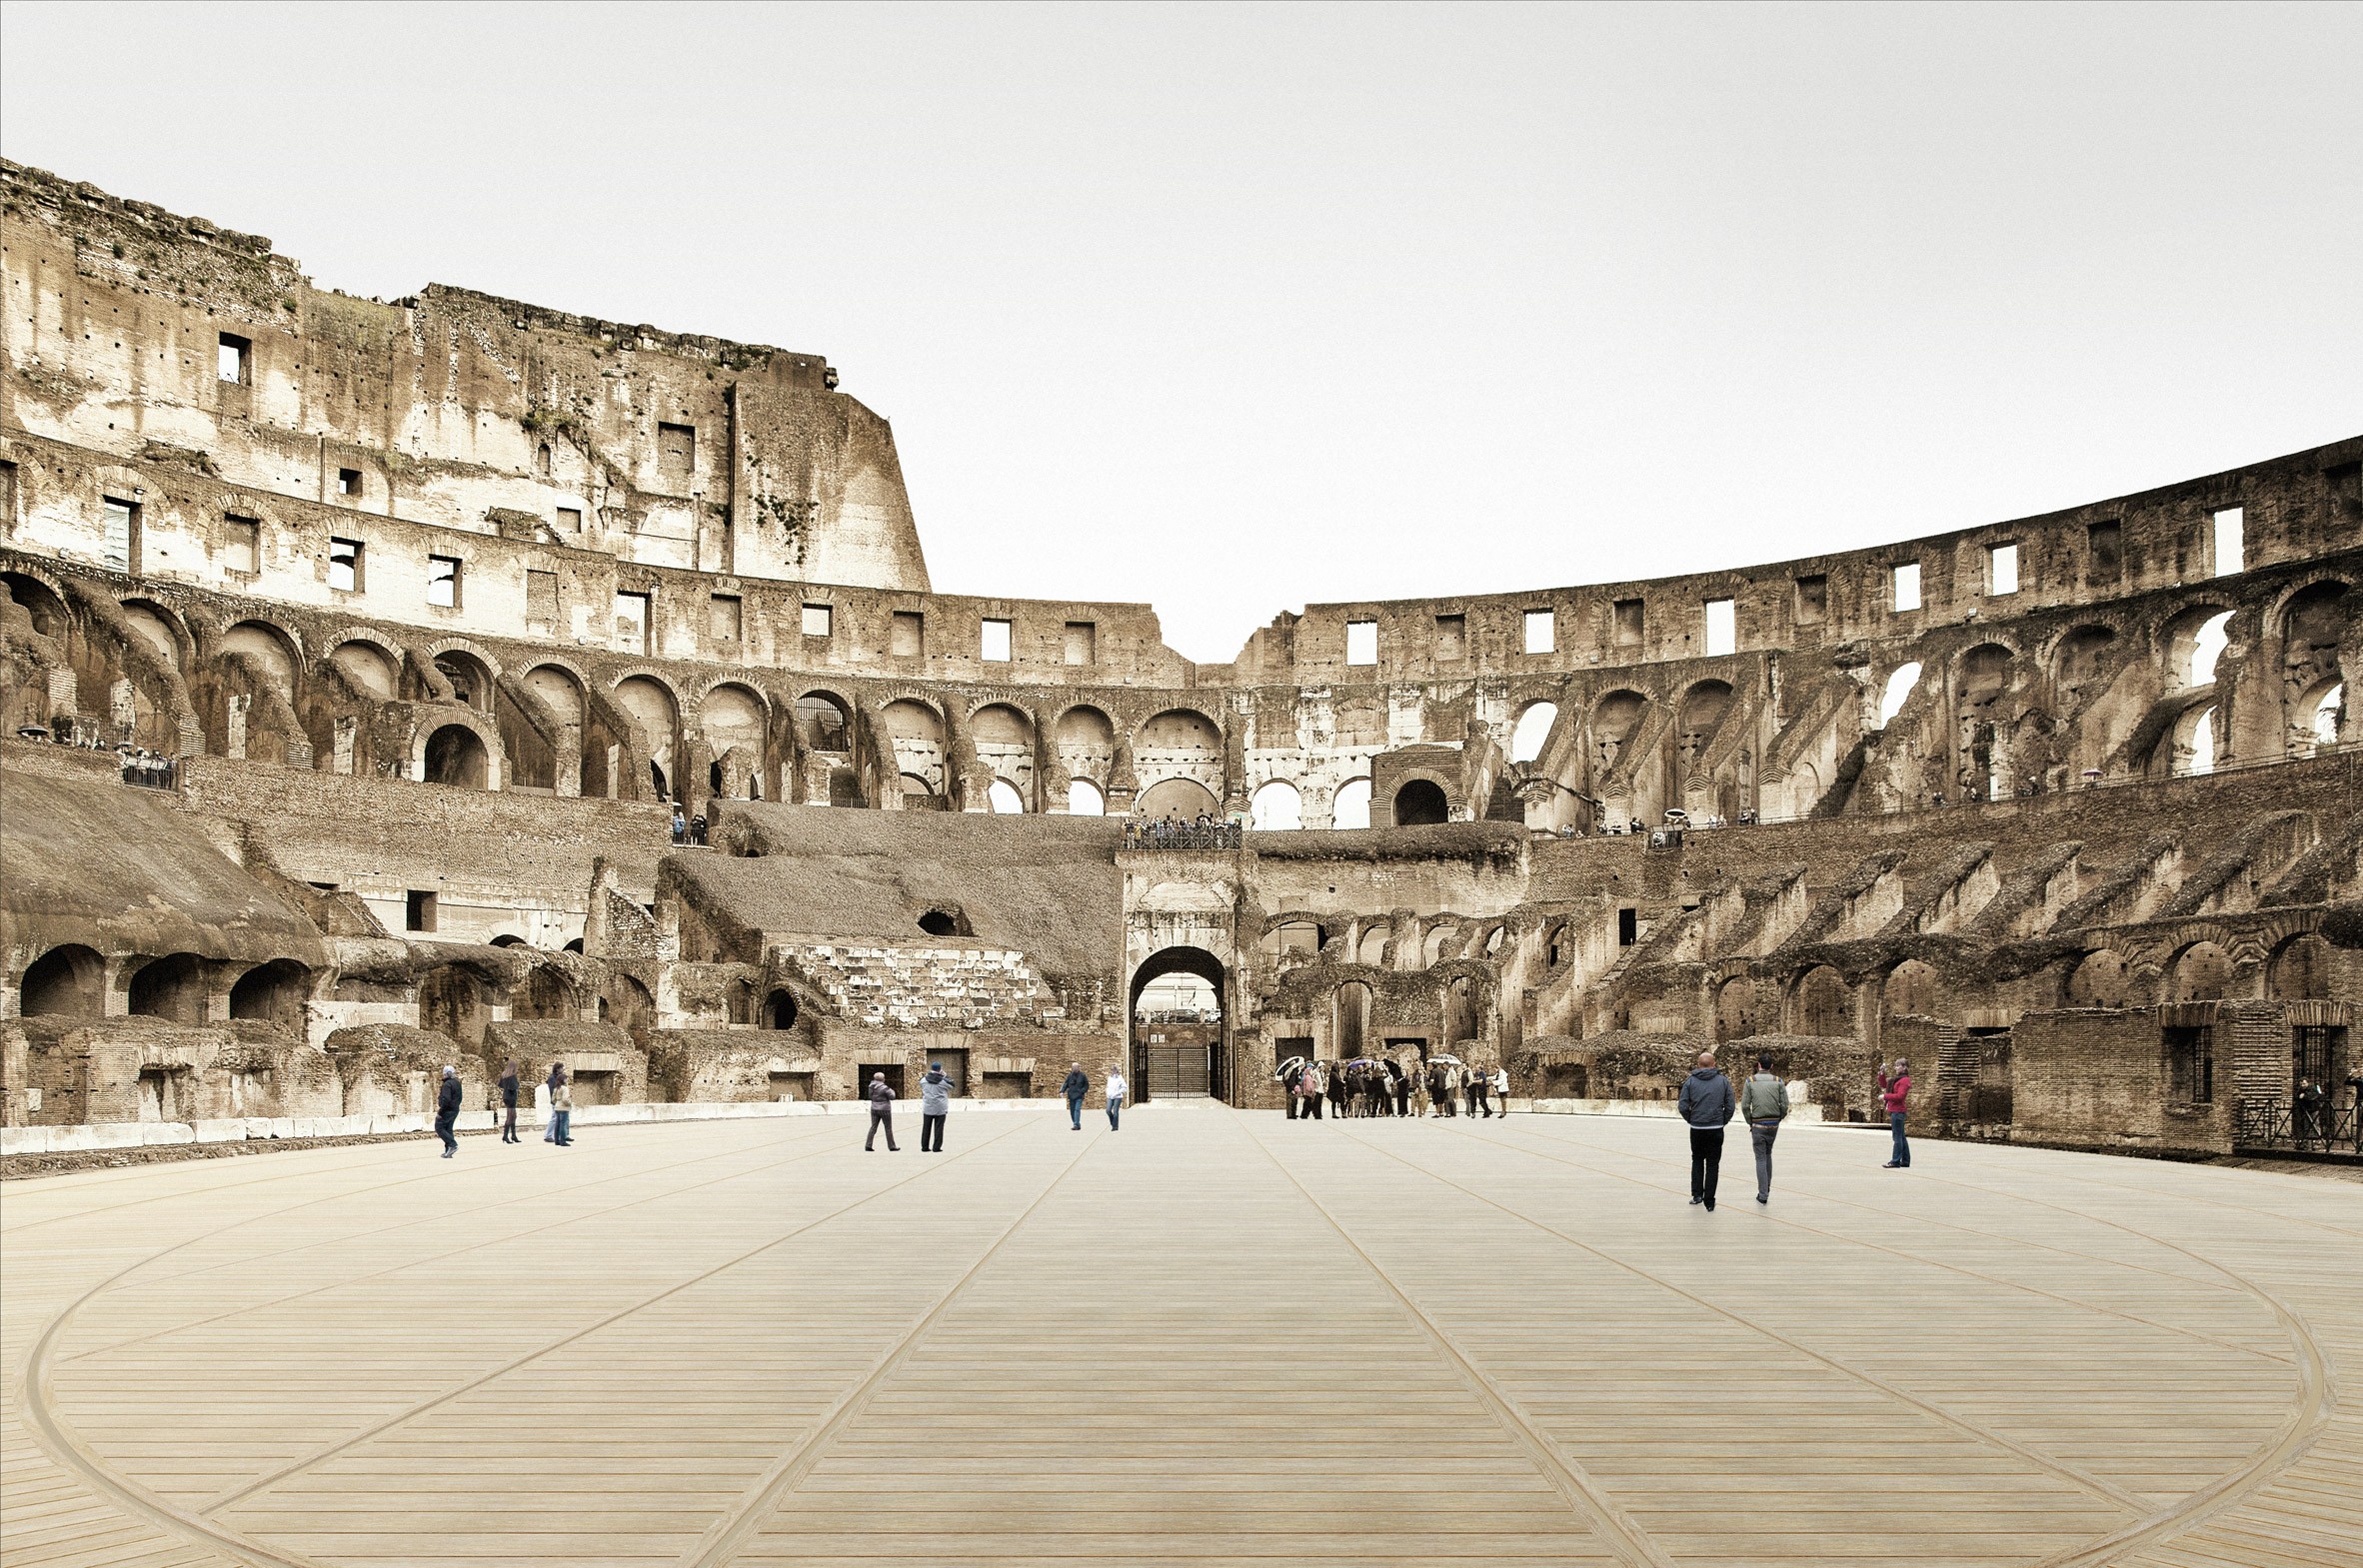 Perspectiva gráfica do piso retrátil do Coliseu (Foto: Reprodução)